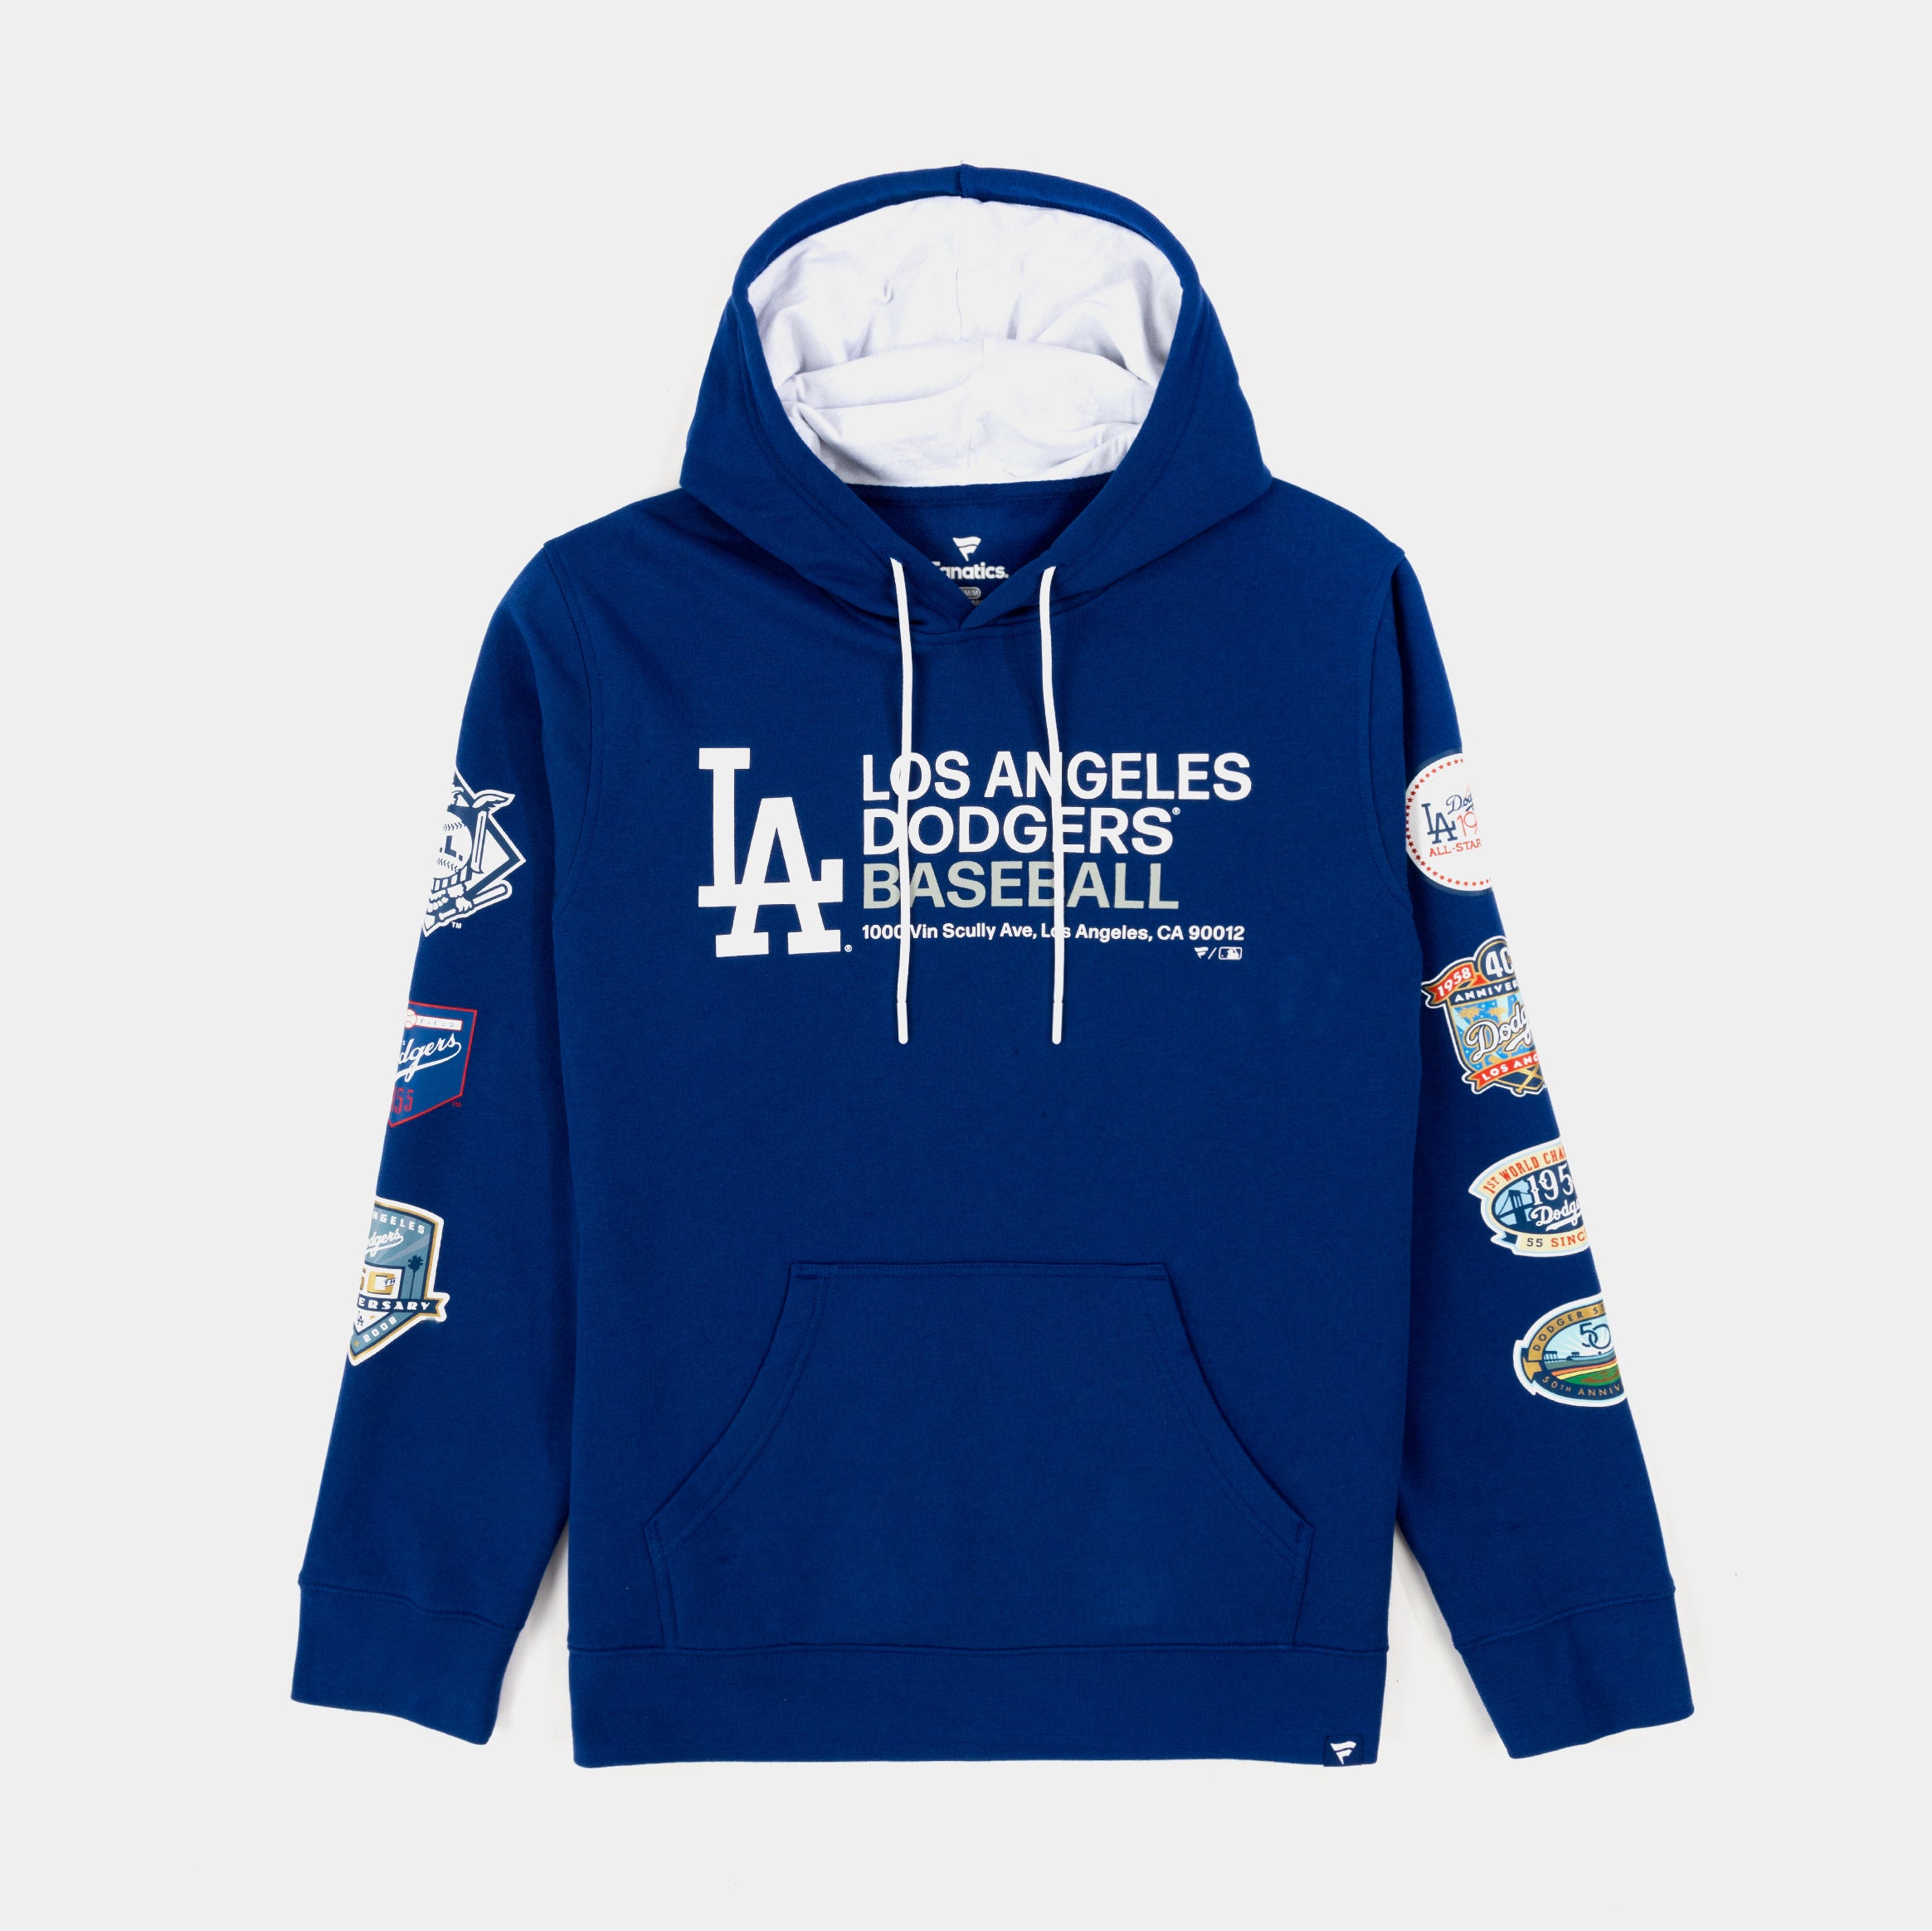 Dodgers Hoodie Nike  Dodgers, Hoodies, Pullover hoodie